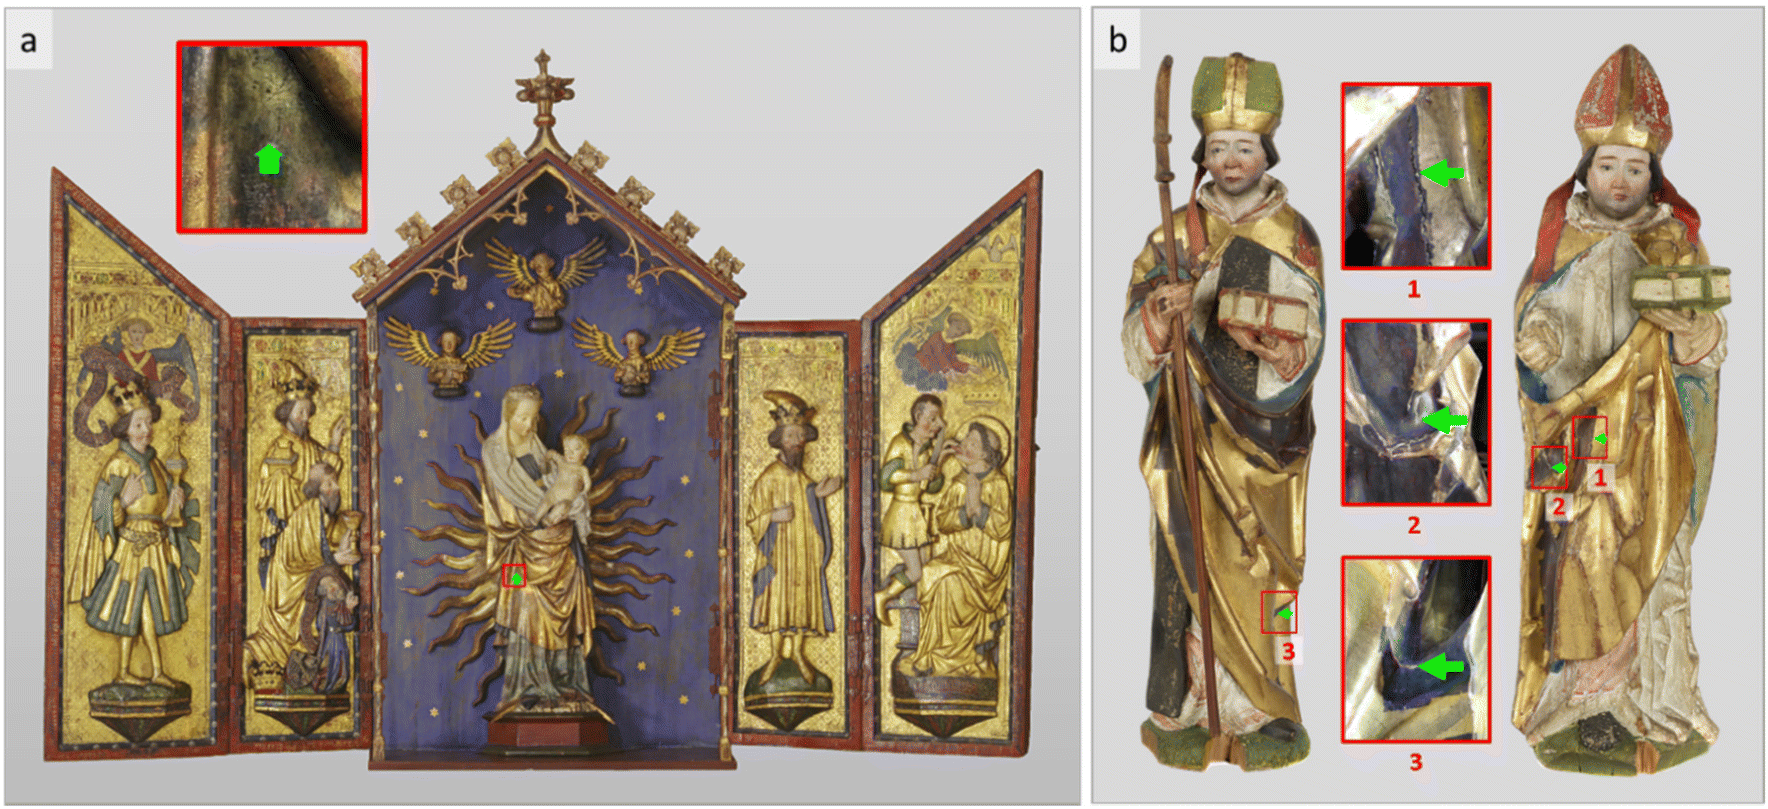 L’altare tedesco del Quindicesimo Secolo e le statue basilesi di vescovi esaminati dal PSI